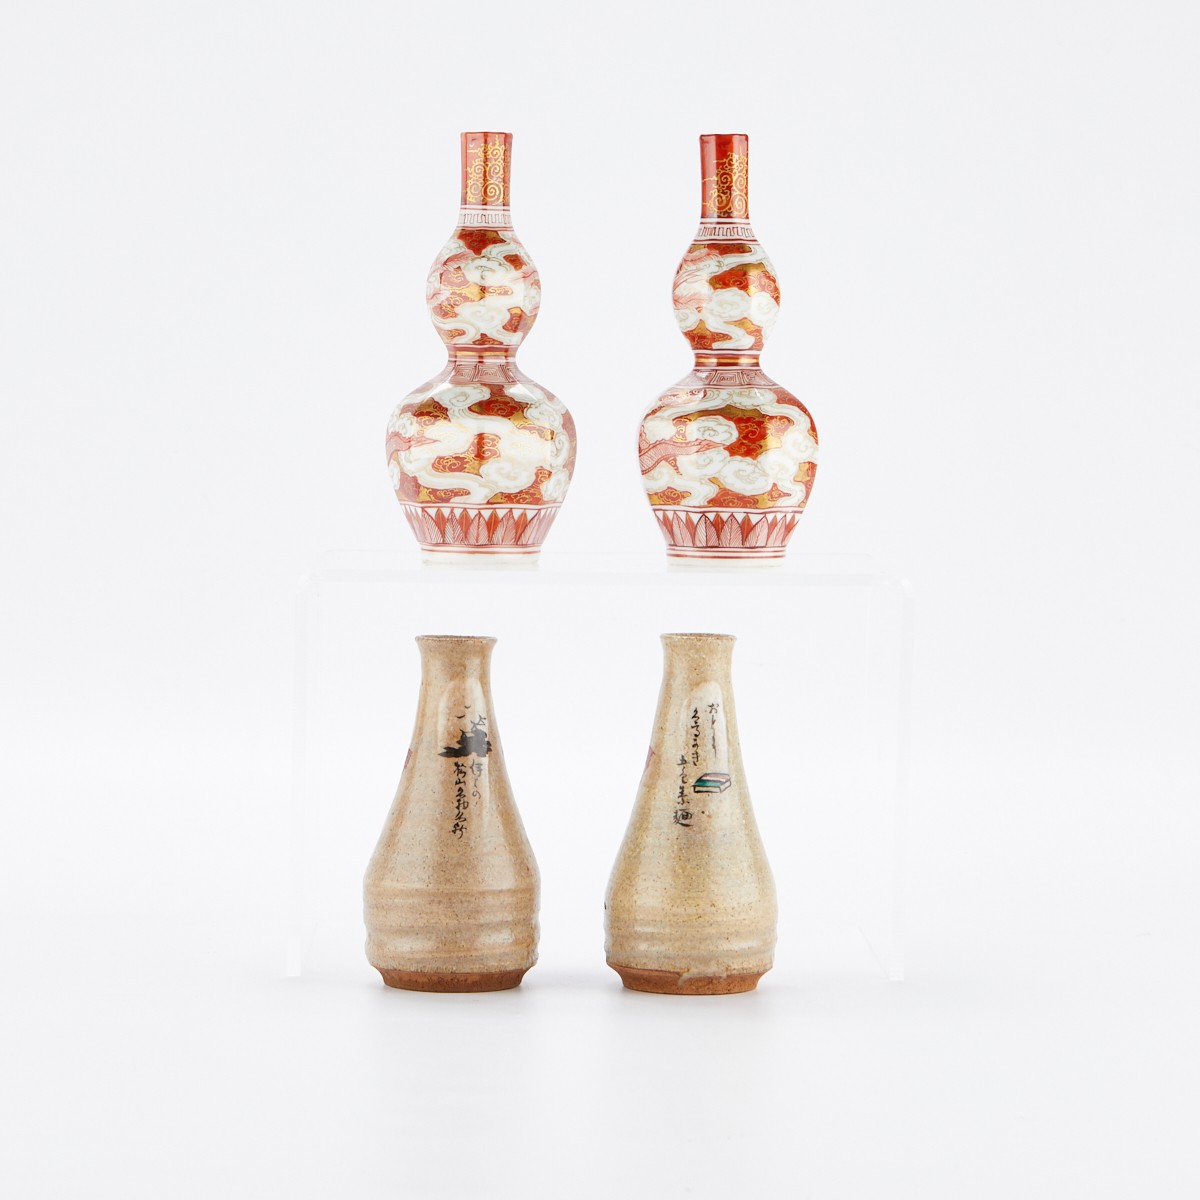 Grp: 4 Japanese Ceramic Sake Bottles 2 Pairs - Image 3 of 16